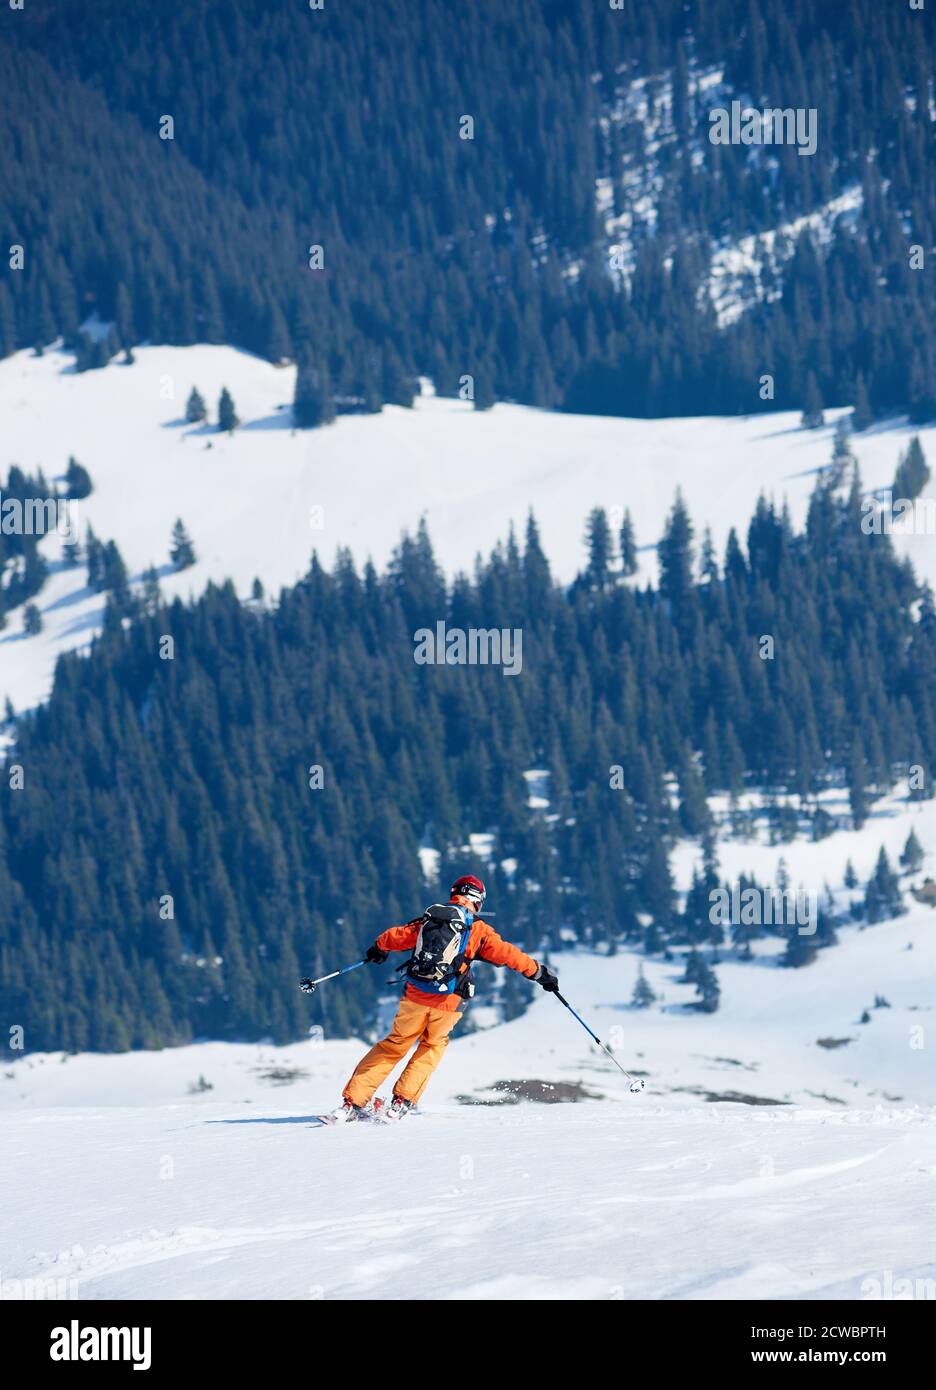 Rückansicht des Skifahrers in heller Kleidung mit Rucksack, der Skier auf schneebedeckten Pisten auf dem Hintergrund von grünen Fichten und Berglichtungen fährt. Winterurlaub, Reise- und Erkundungskonzept. Stockfoto